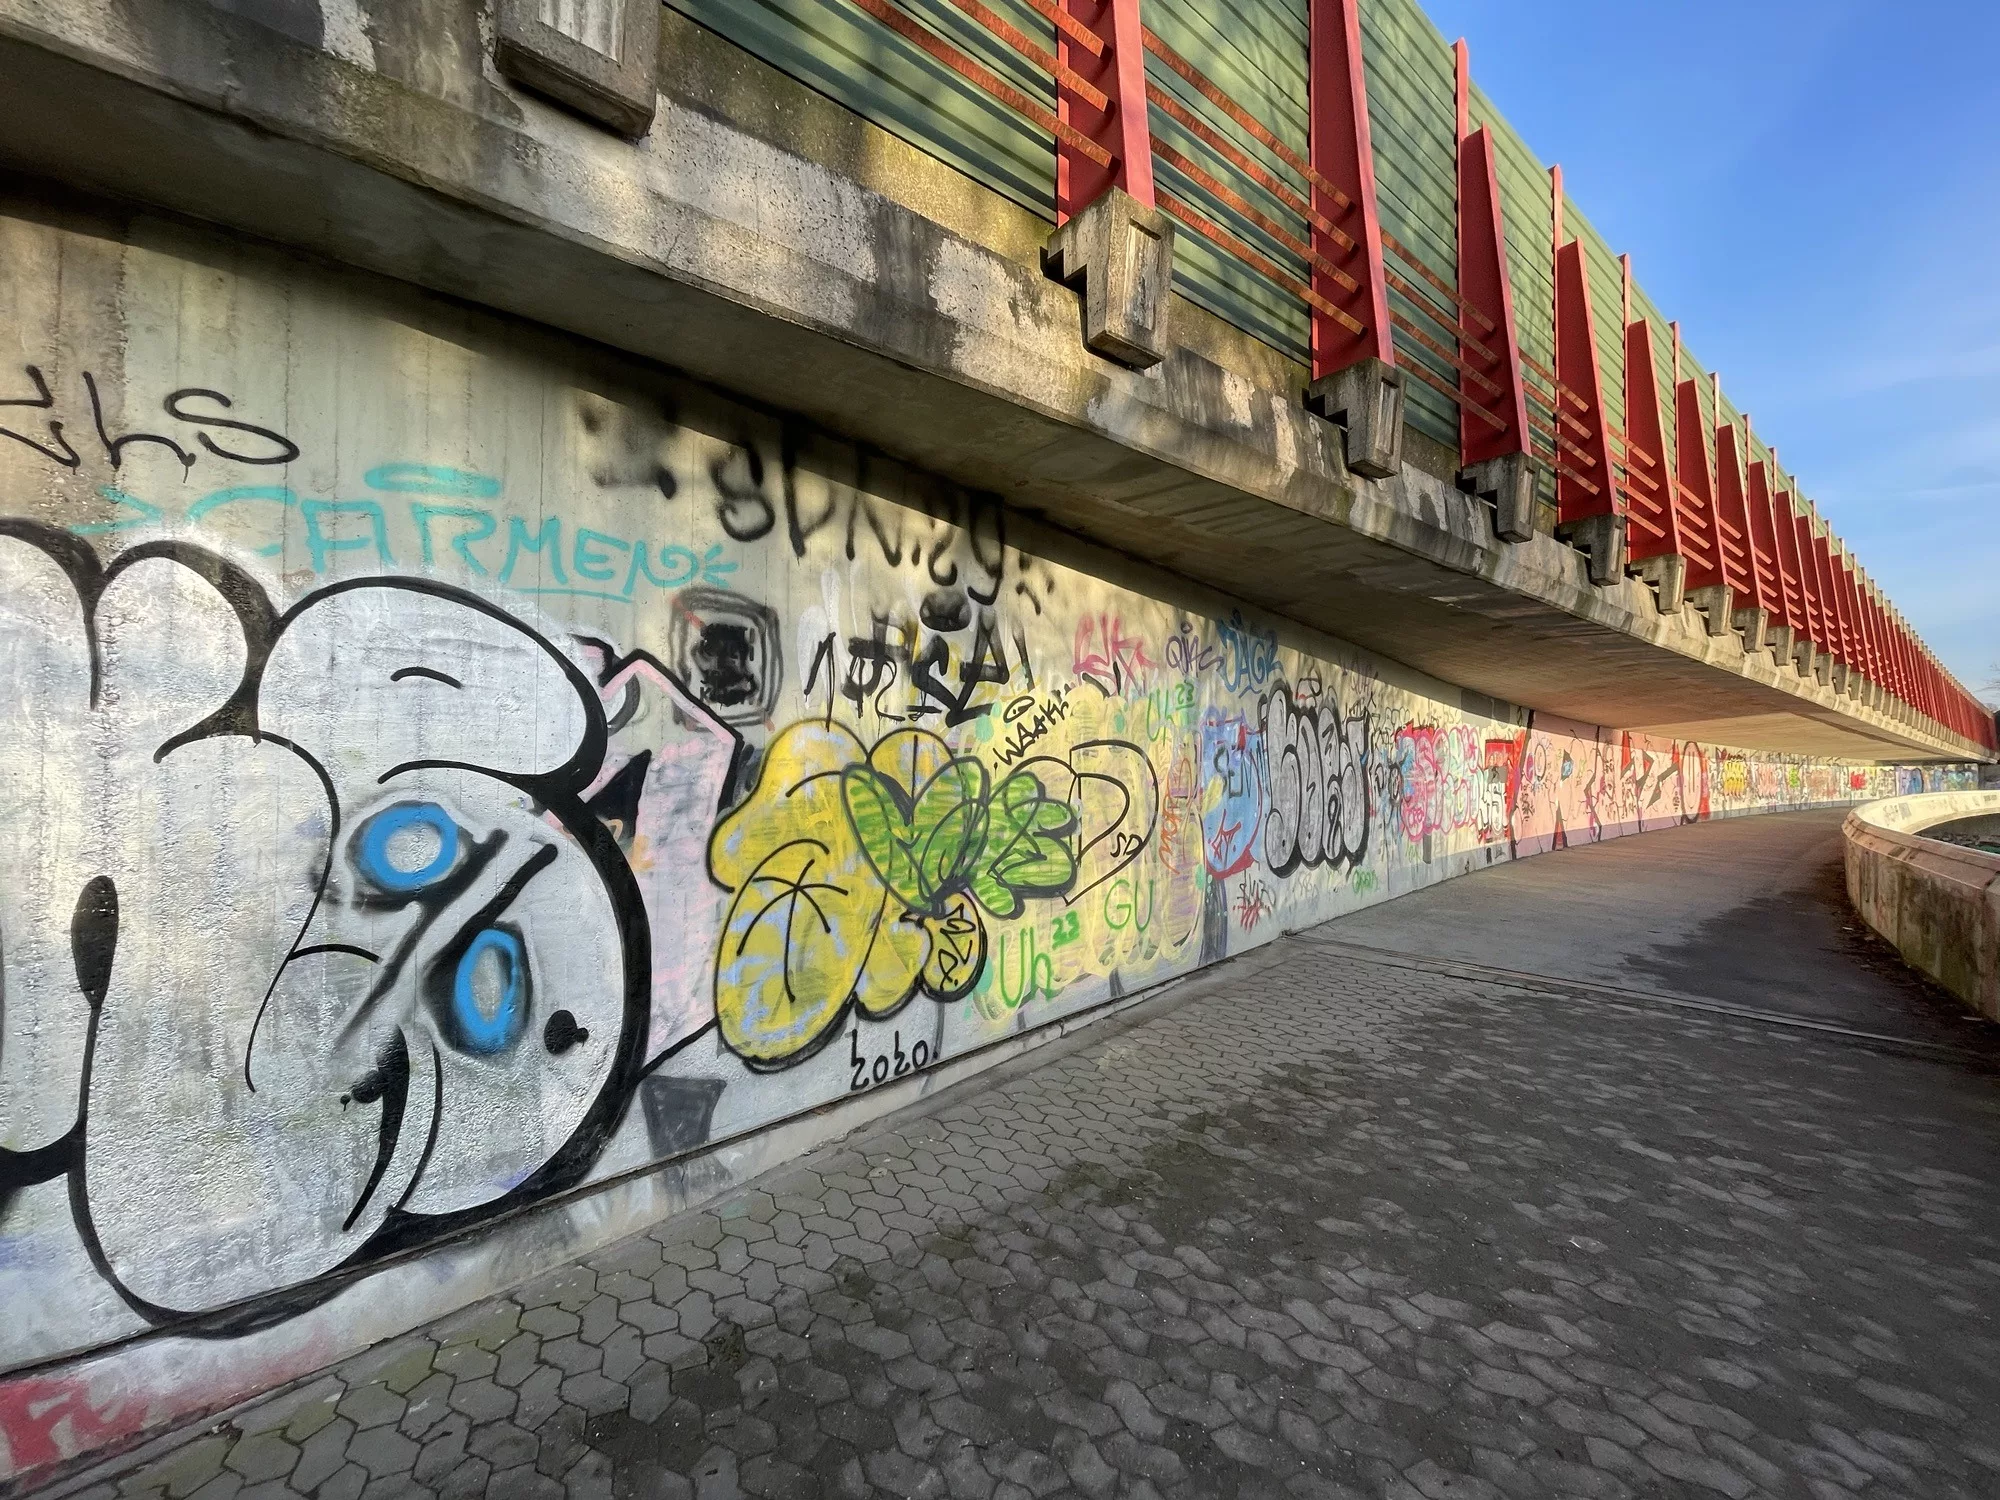 Messeschnellwegbrücke mit Graffitis an der langen Betonwand